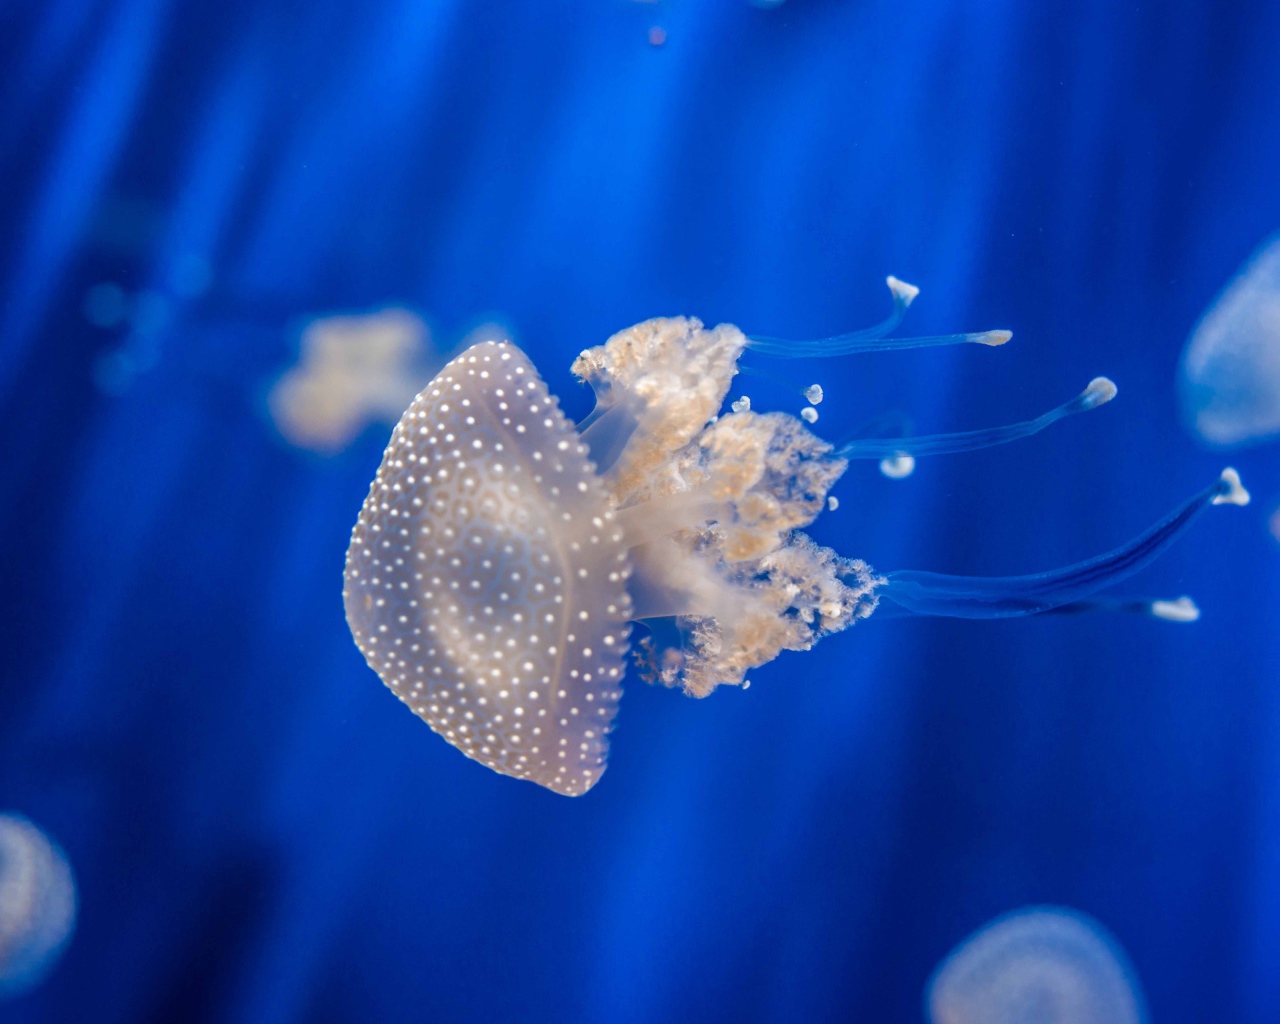 Красивая медуза плавает в голубой воде